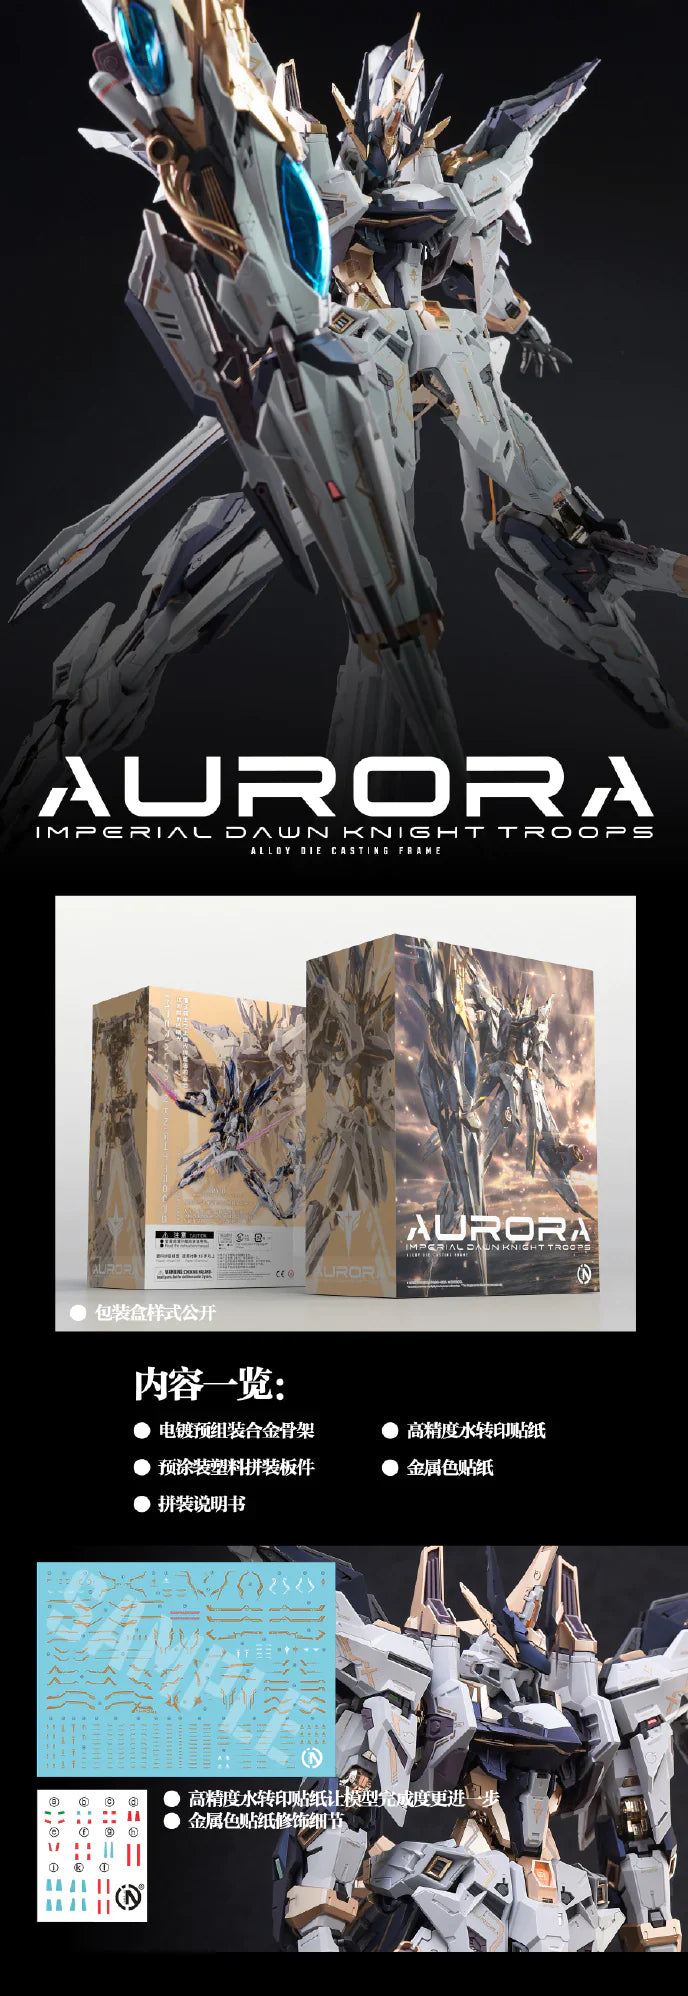 IN-ERA+ PMD Perfaction Metal Design 1/100 Aurora model kit